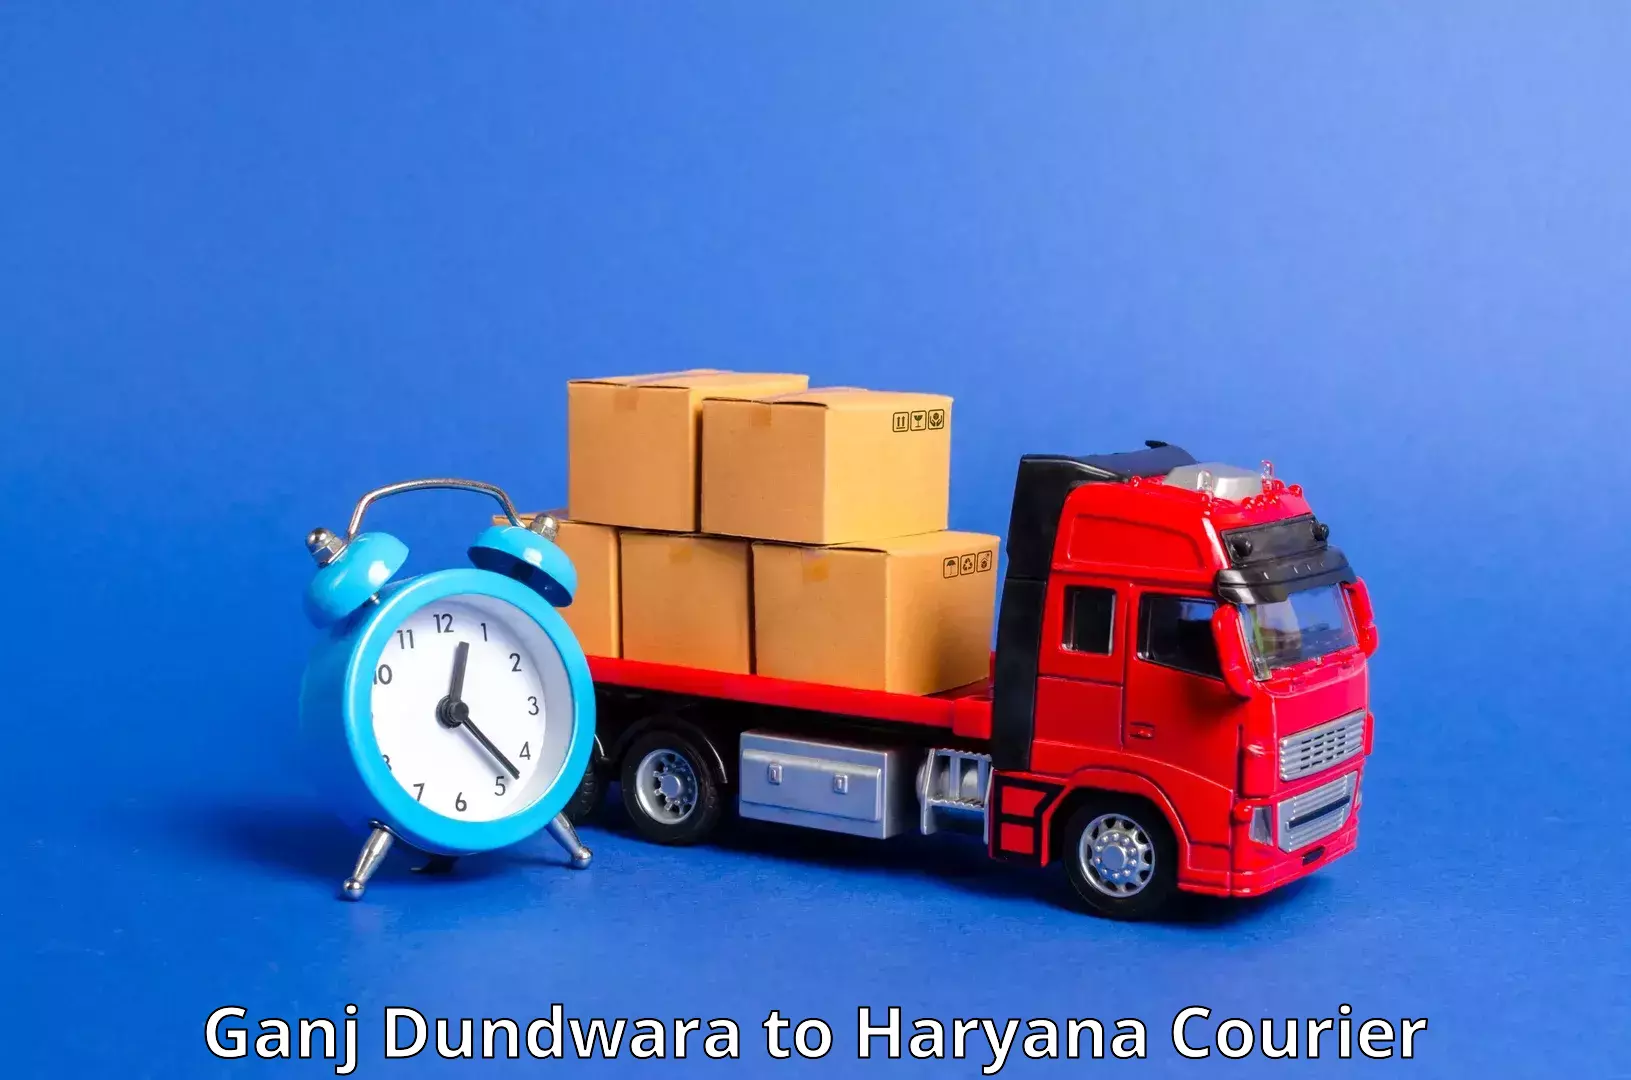 Efficient parcel delivery Ganj Dundwara to Hansi